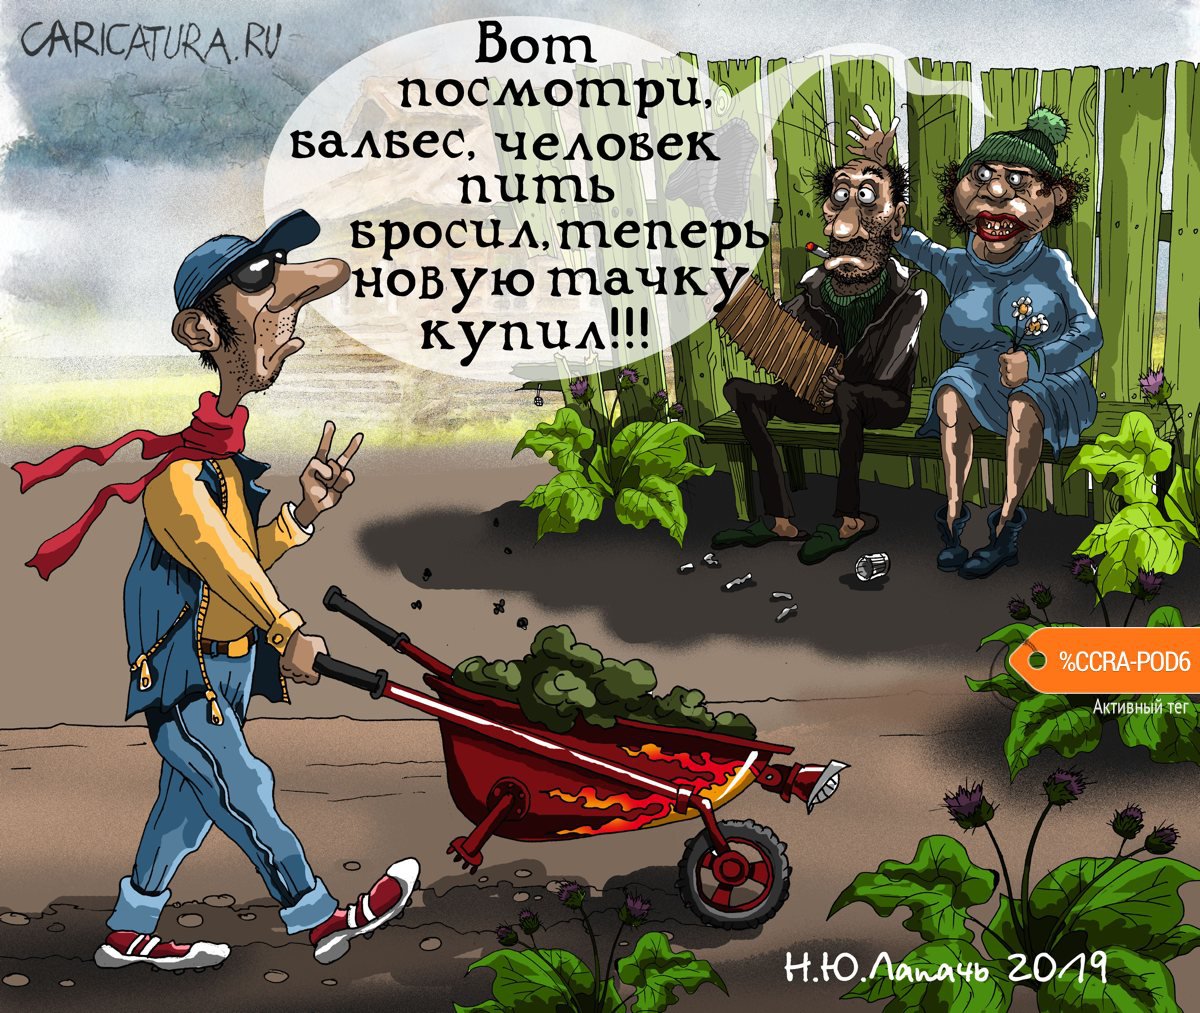 Карикатура "Новая тачка", Теплый Телогрей